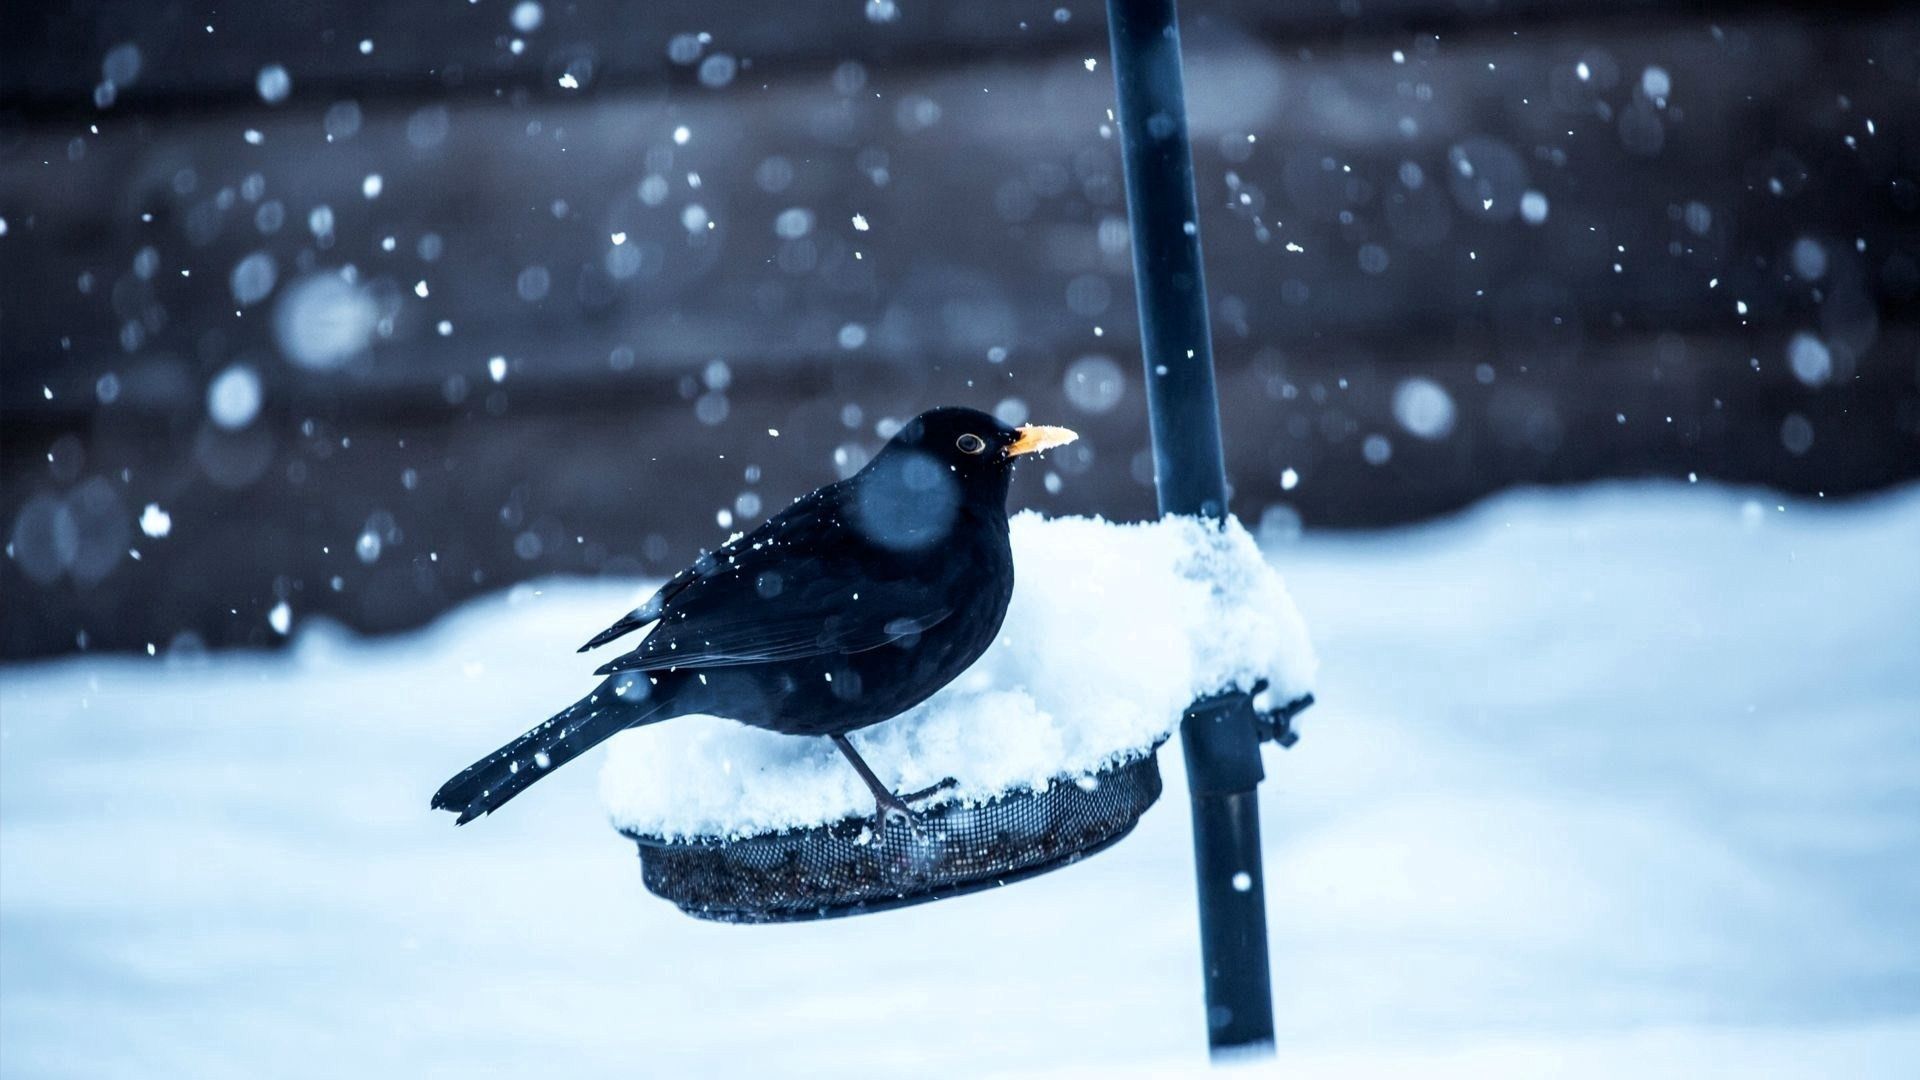 Descarga gratuita de fondo de pantalla para móvil de Pájaro, Animales, Invierno, Nieve, Cuervo.